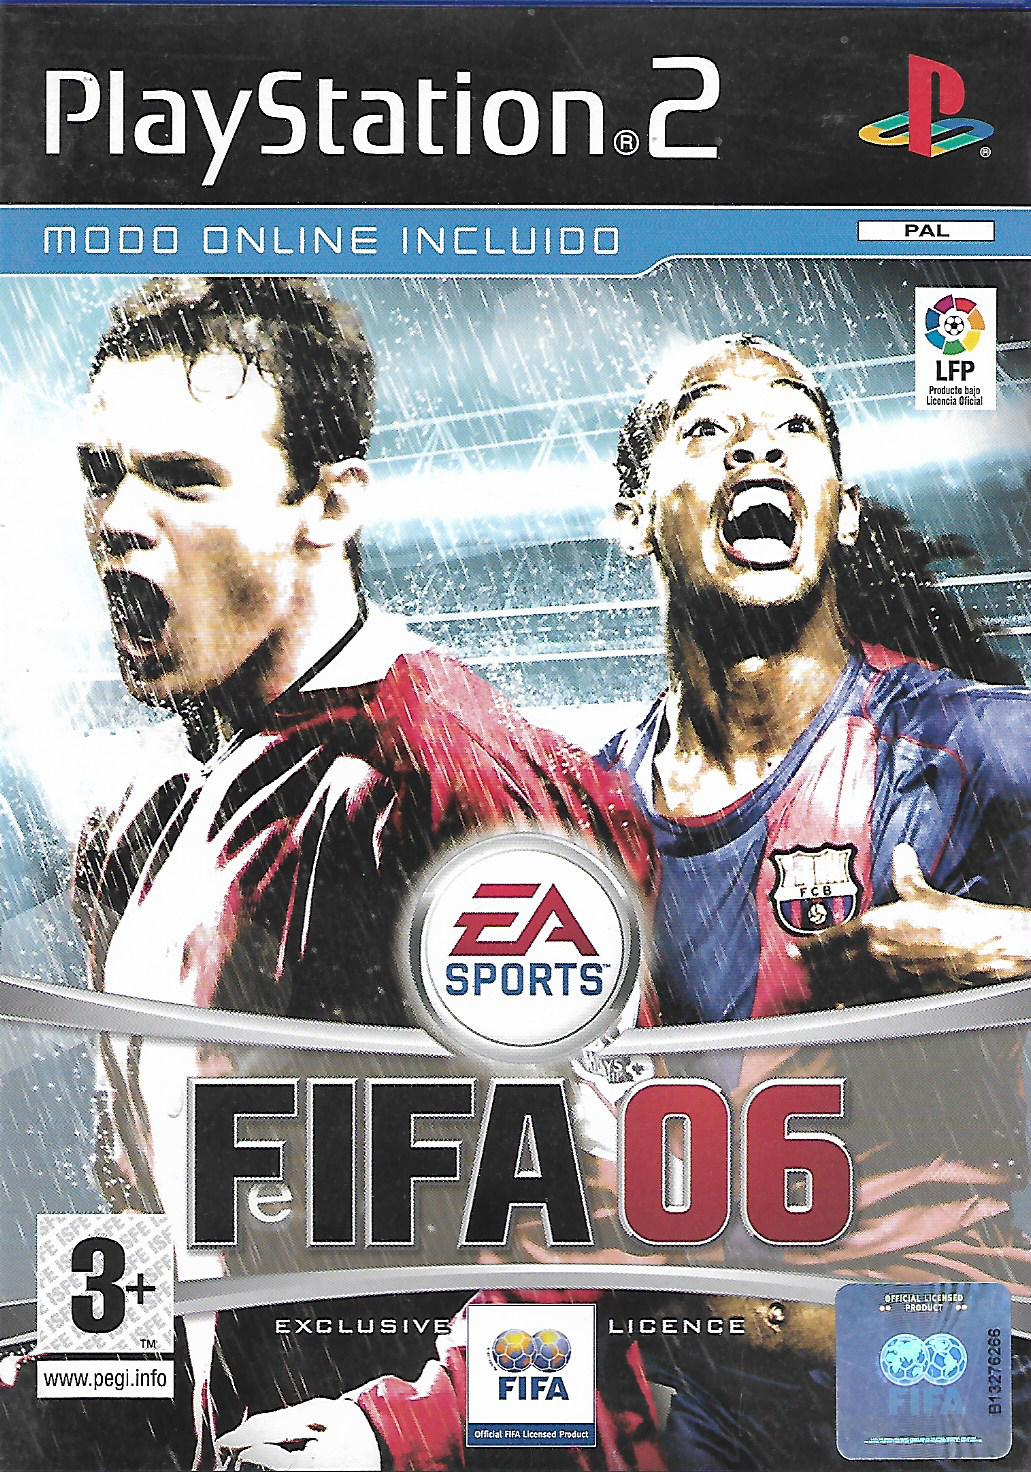 FIFA 06 (PS2 - bazar)